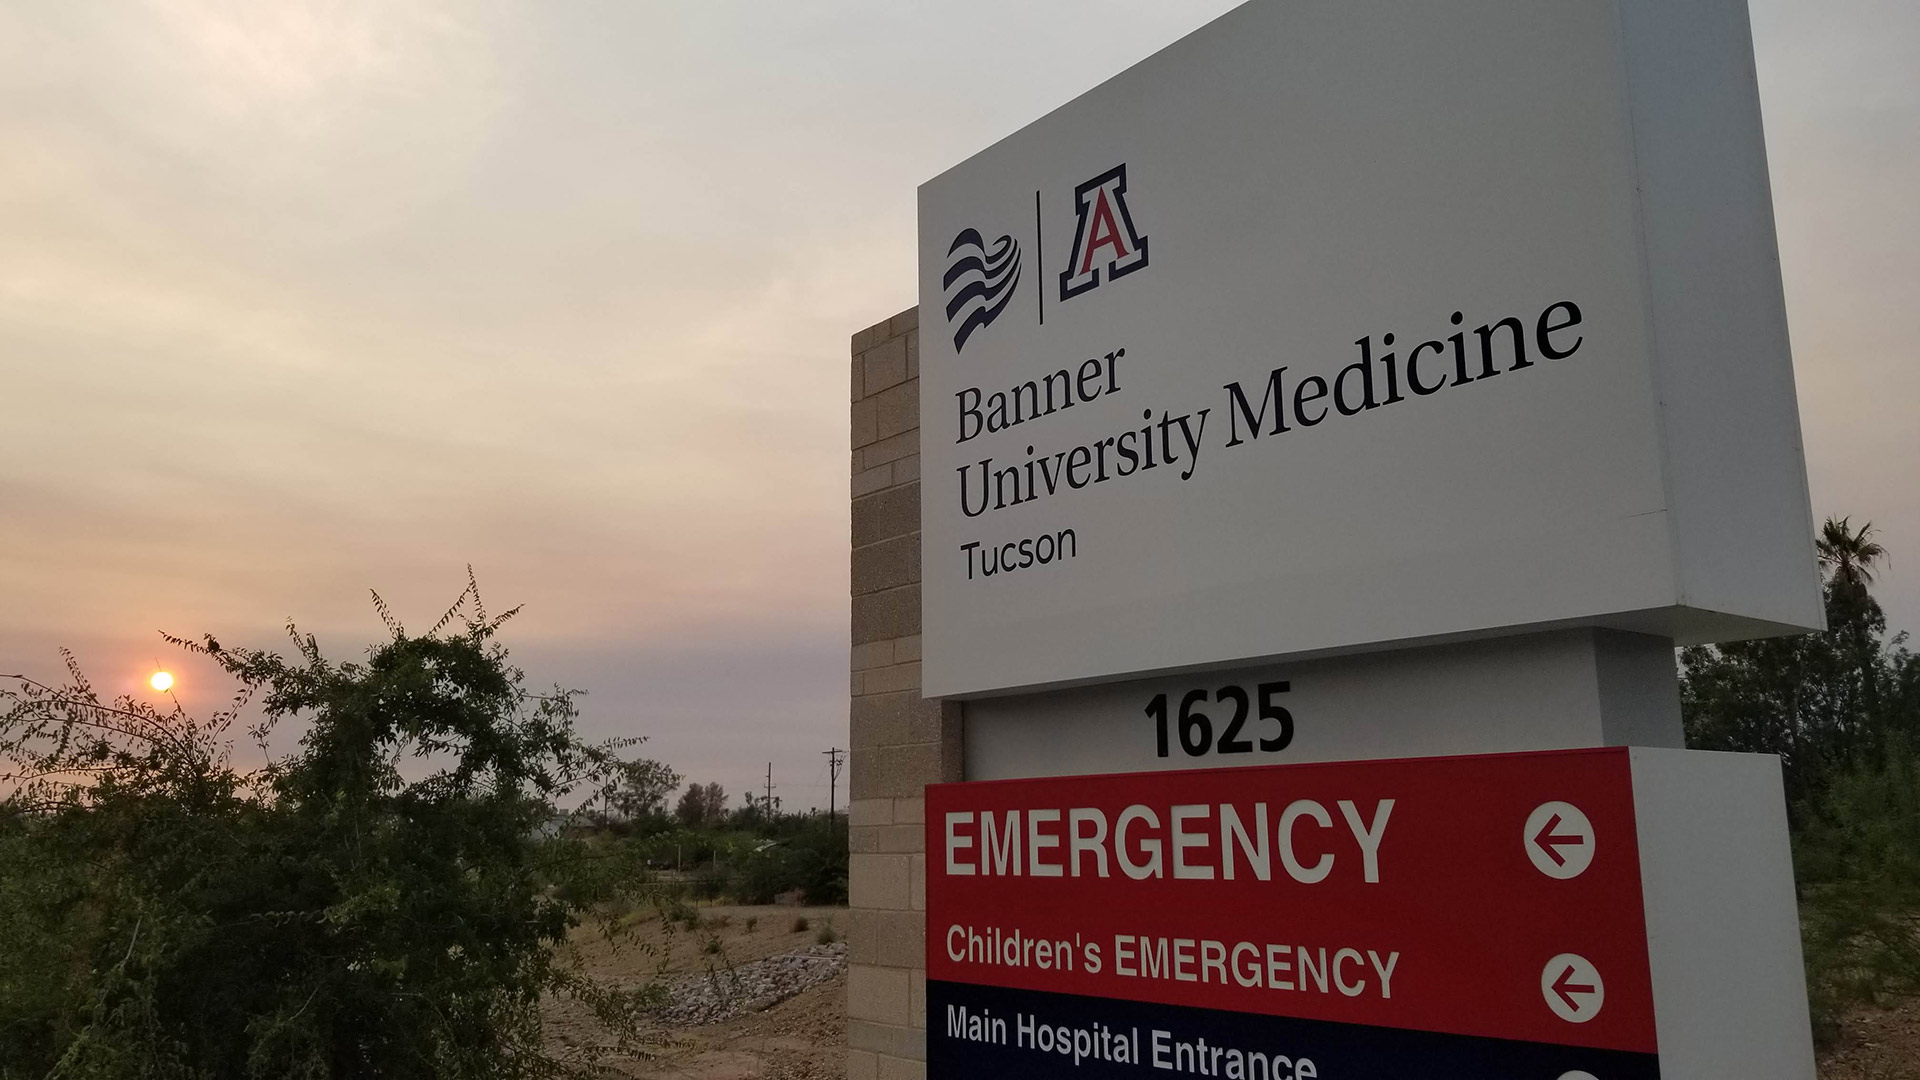 Banner University Medicine hospital emergency sign